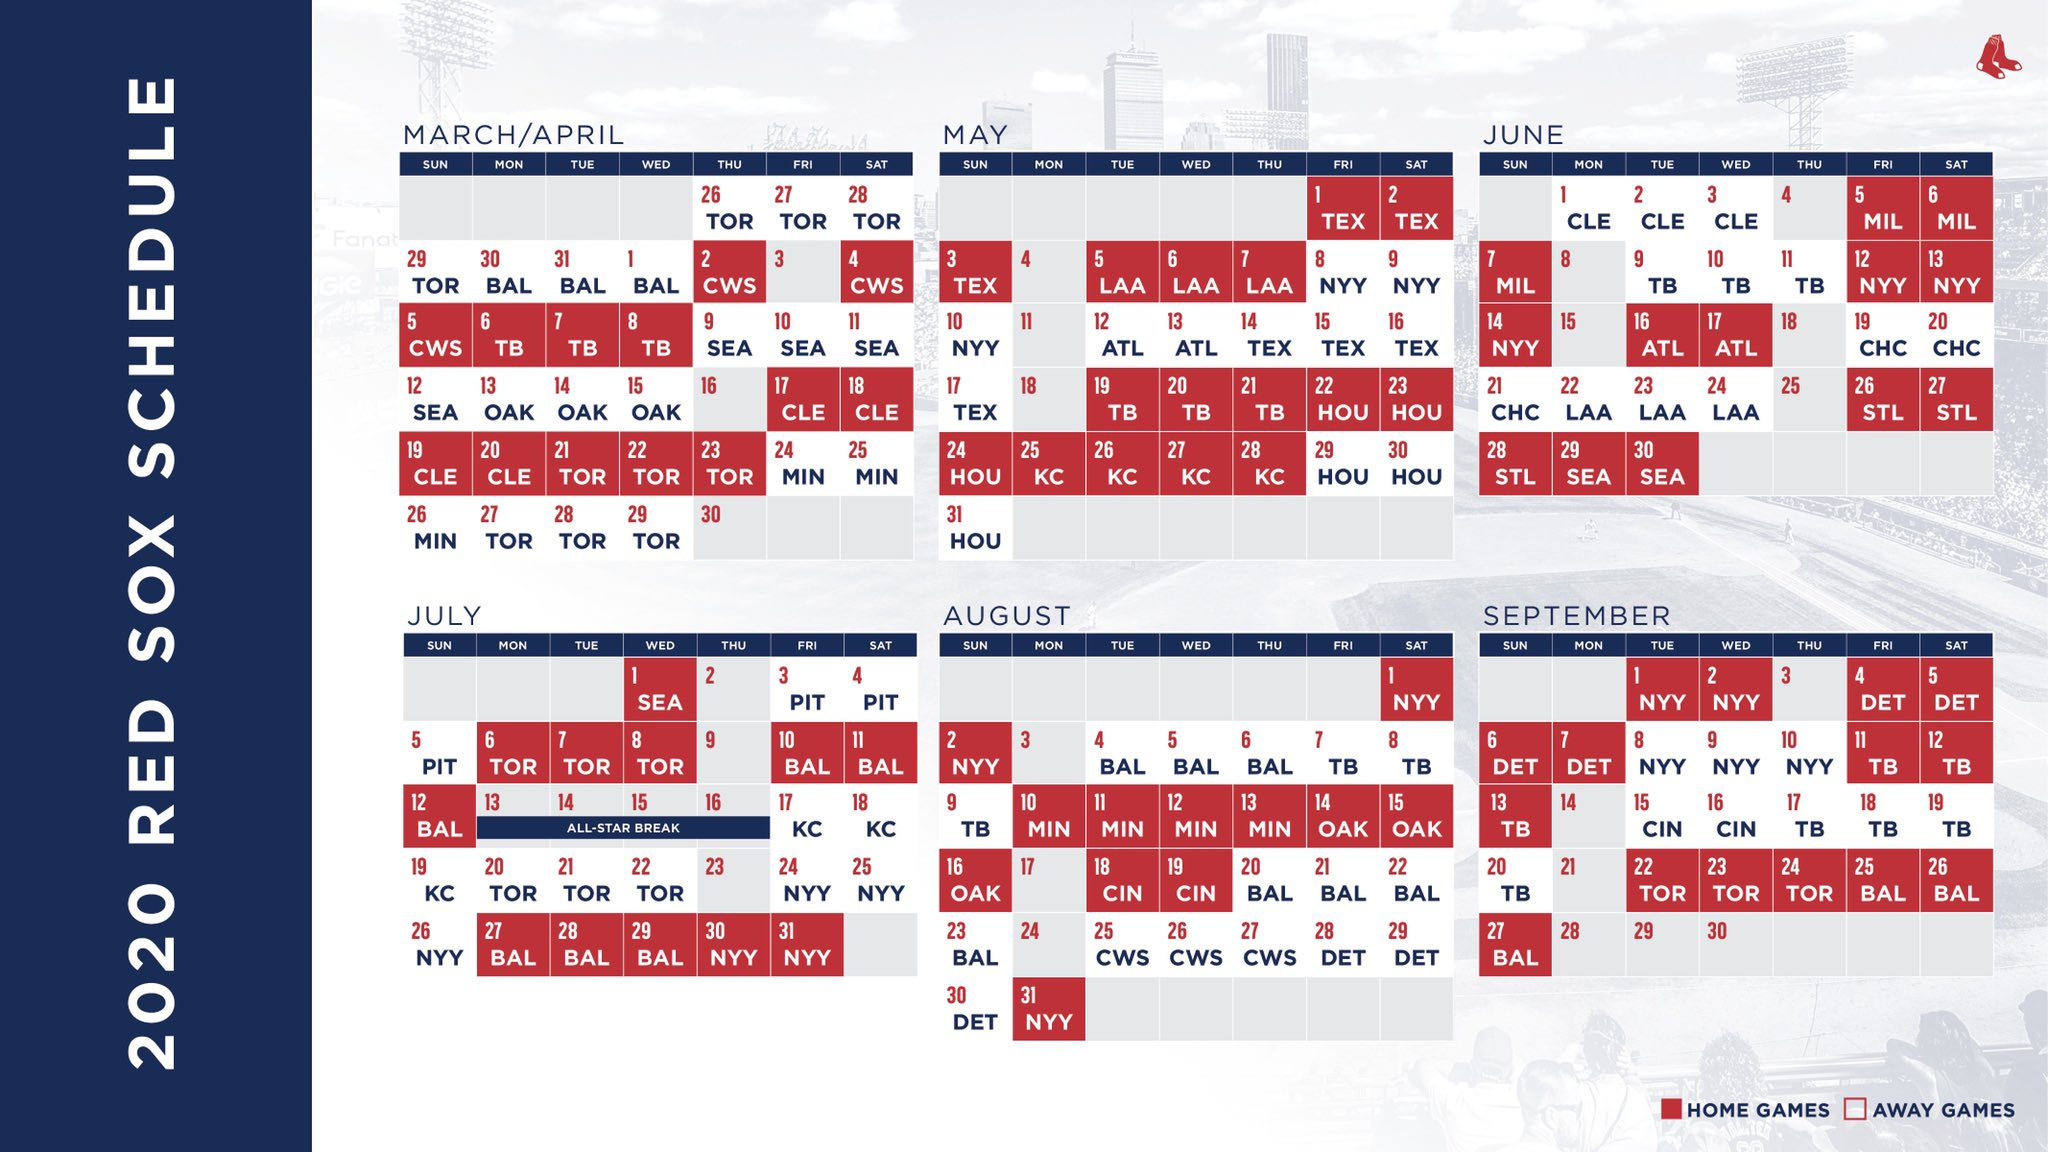 Phillies Schedule May 2020 2020 Philadelphia Phillies 